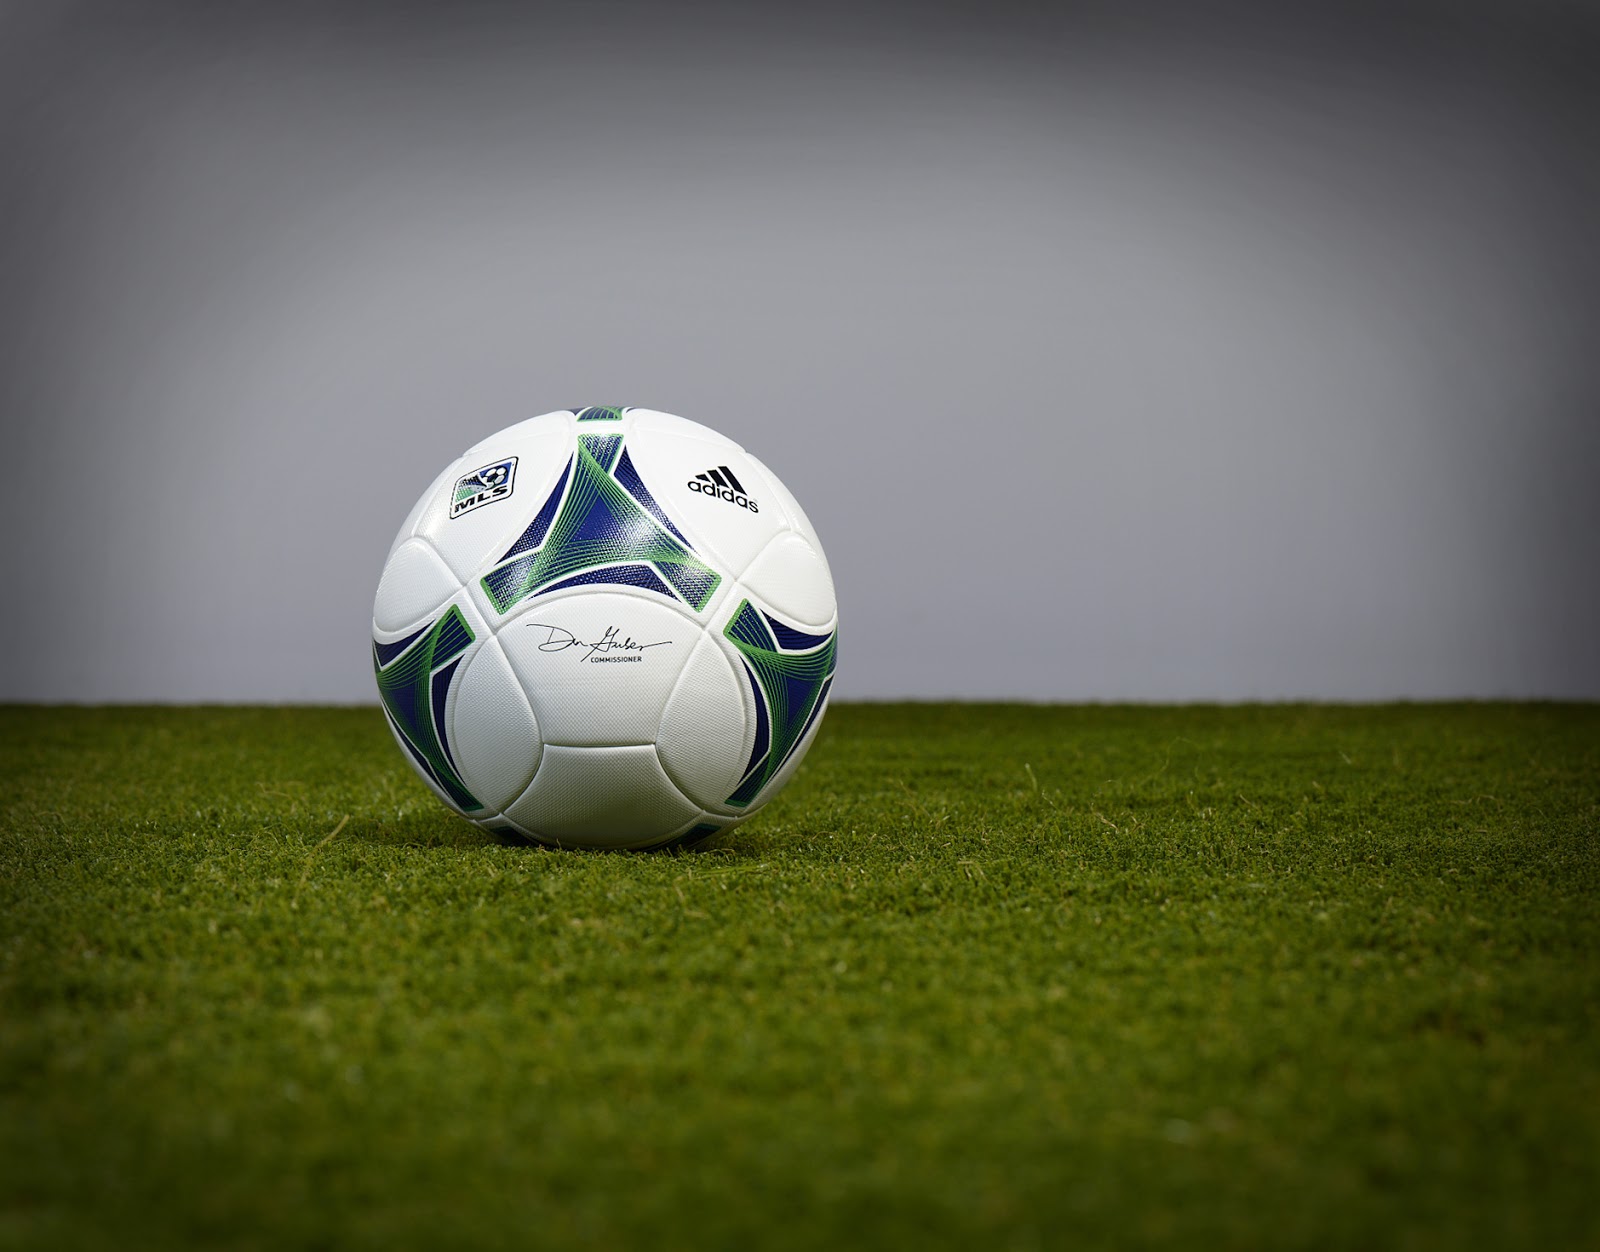 Adidas Mls Official Match Ball